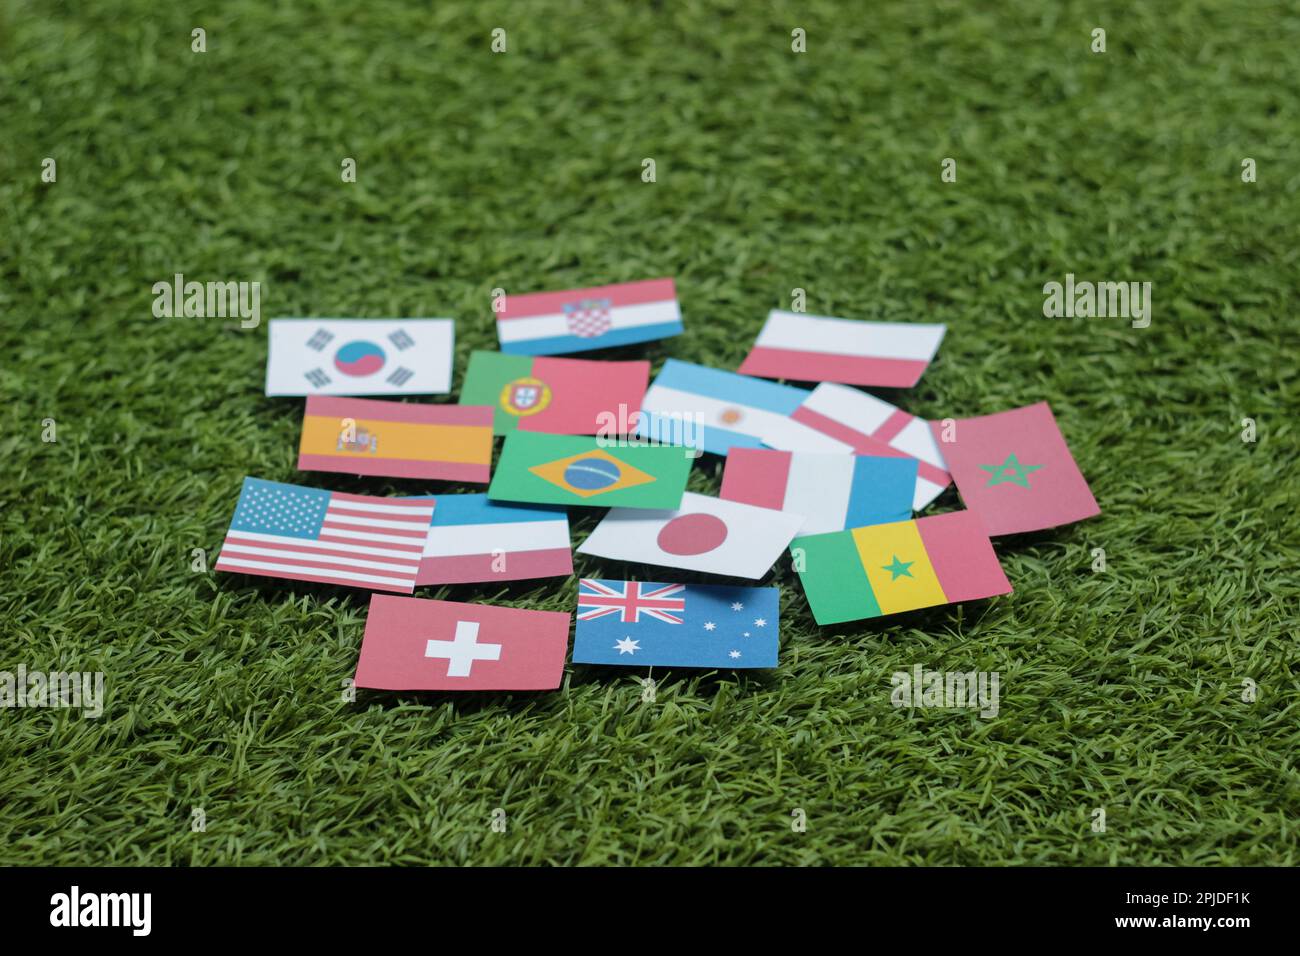 Pallone da calcio in pelle con bandiere internazionali dei paesi partecipanti al torneo isolato su sfondo bianco. Calcio Foto Stock